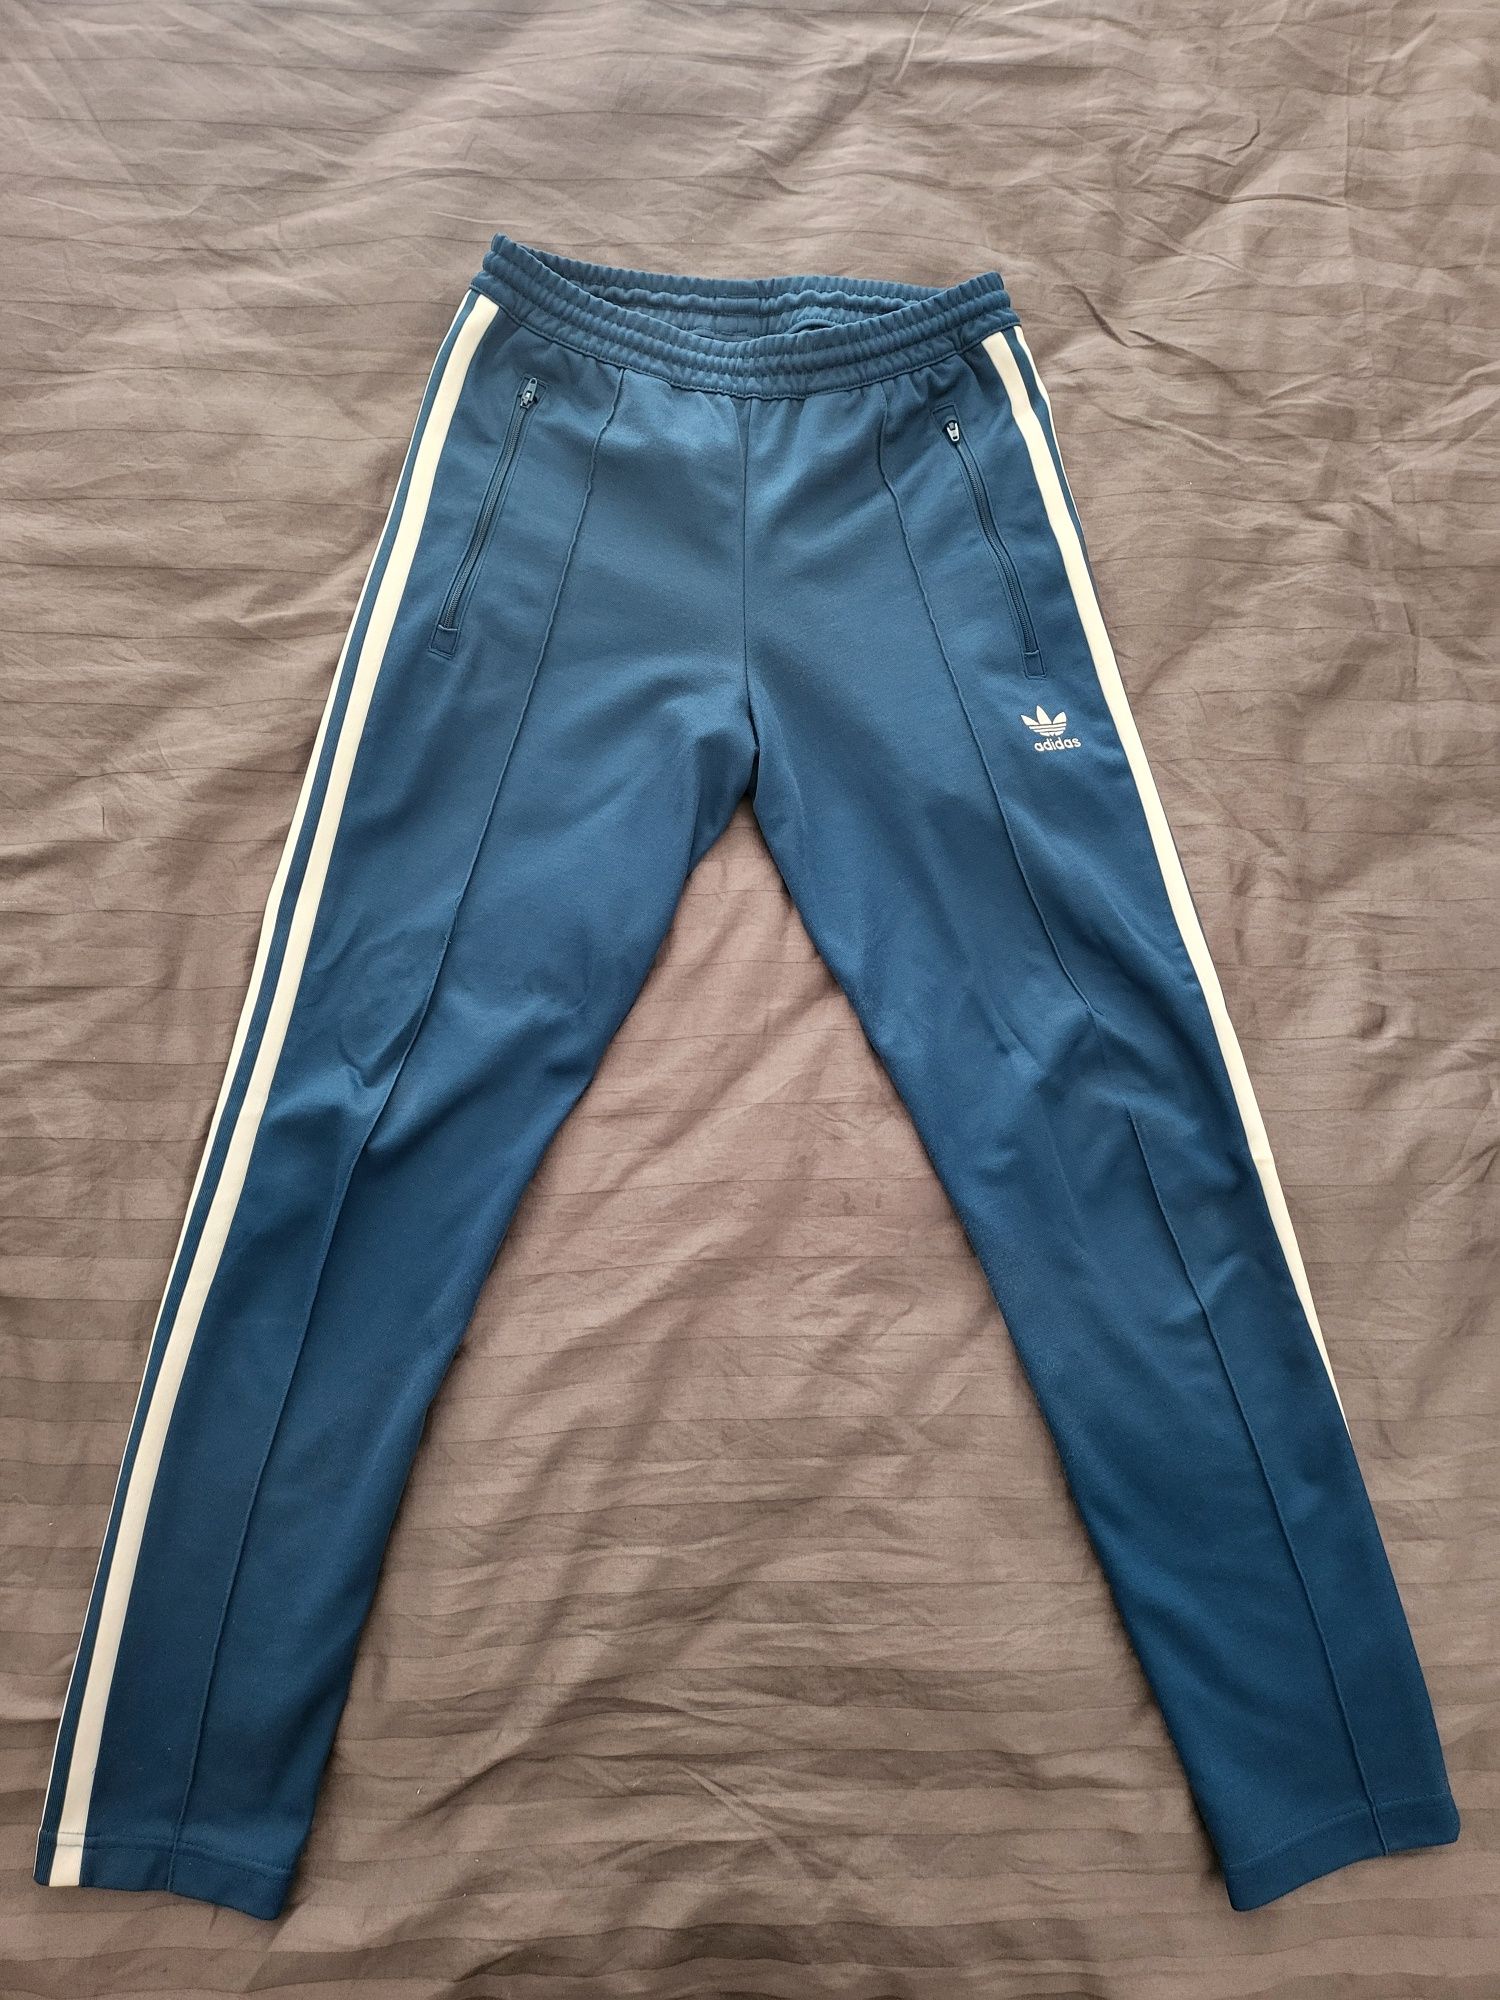 Trening barbati Adidas albastru (pantaloni + bluza)